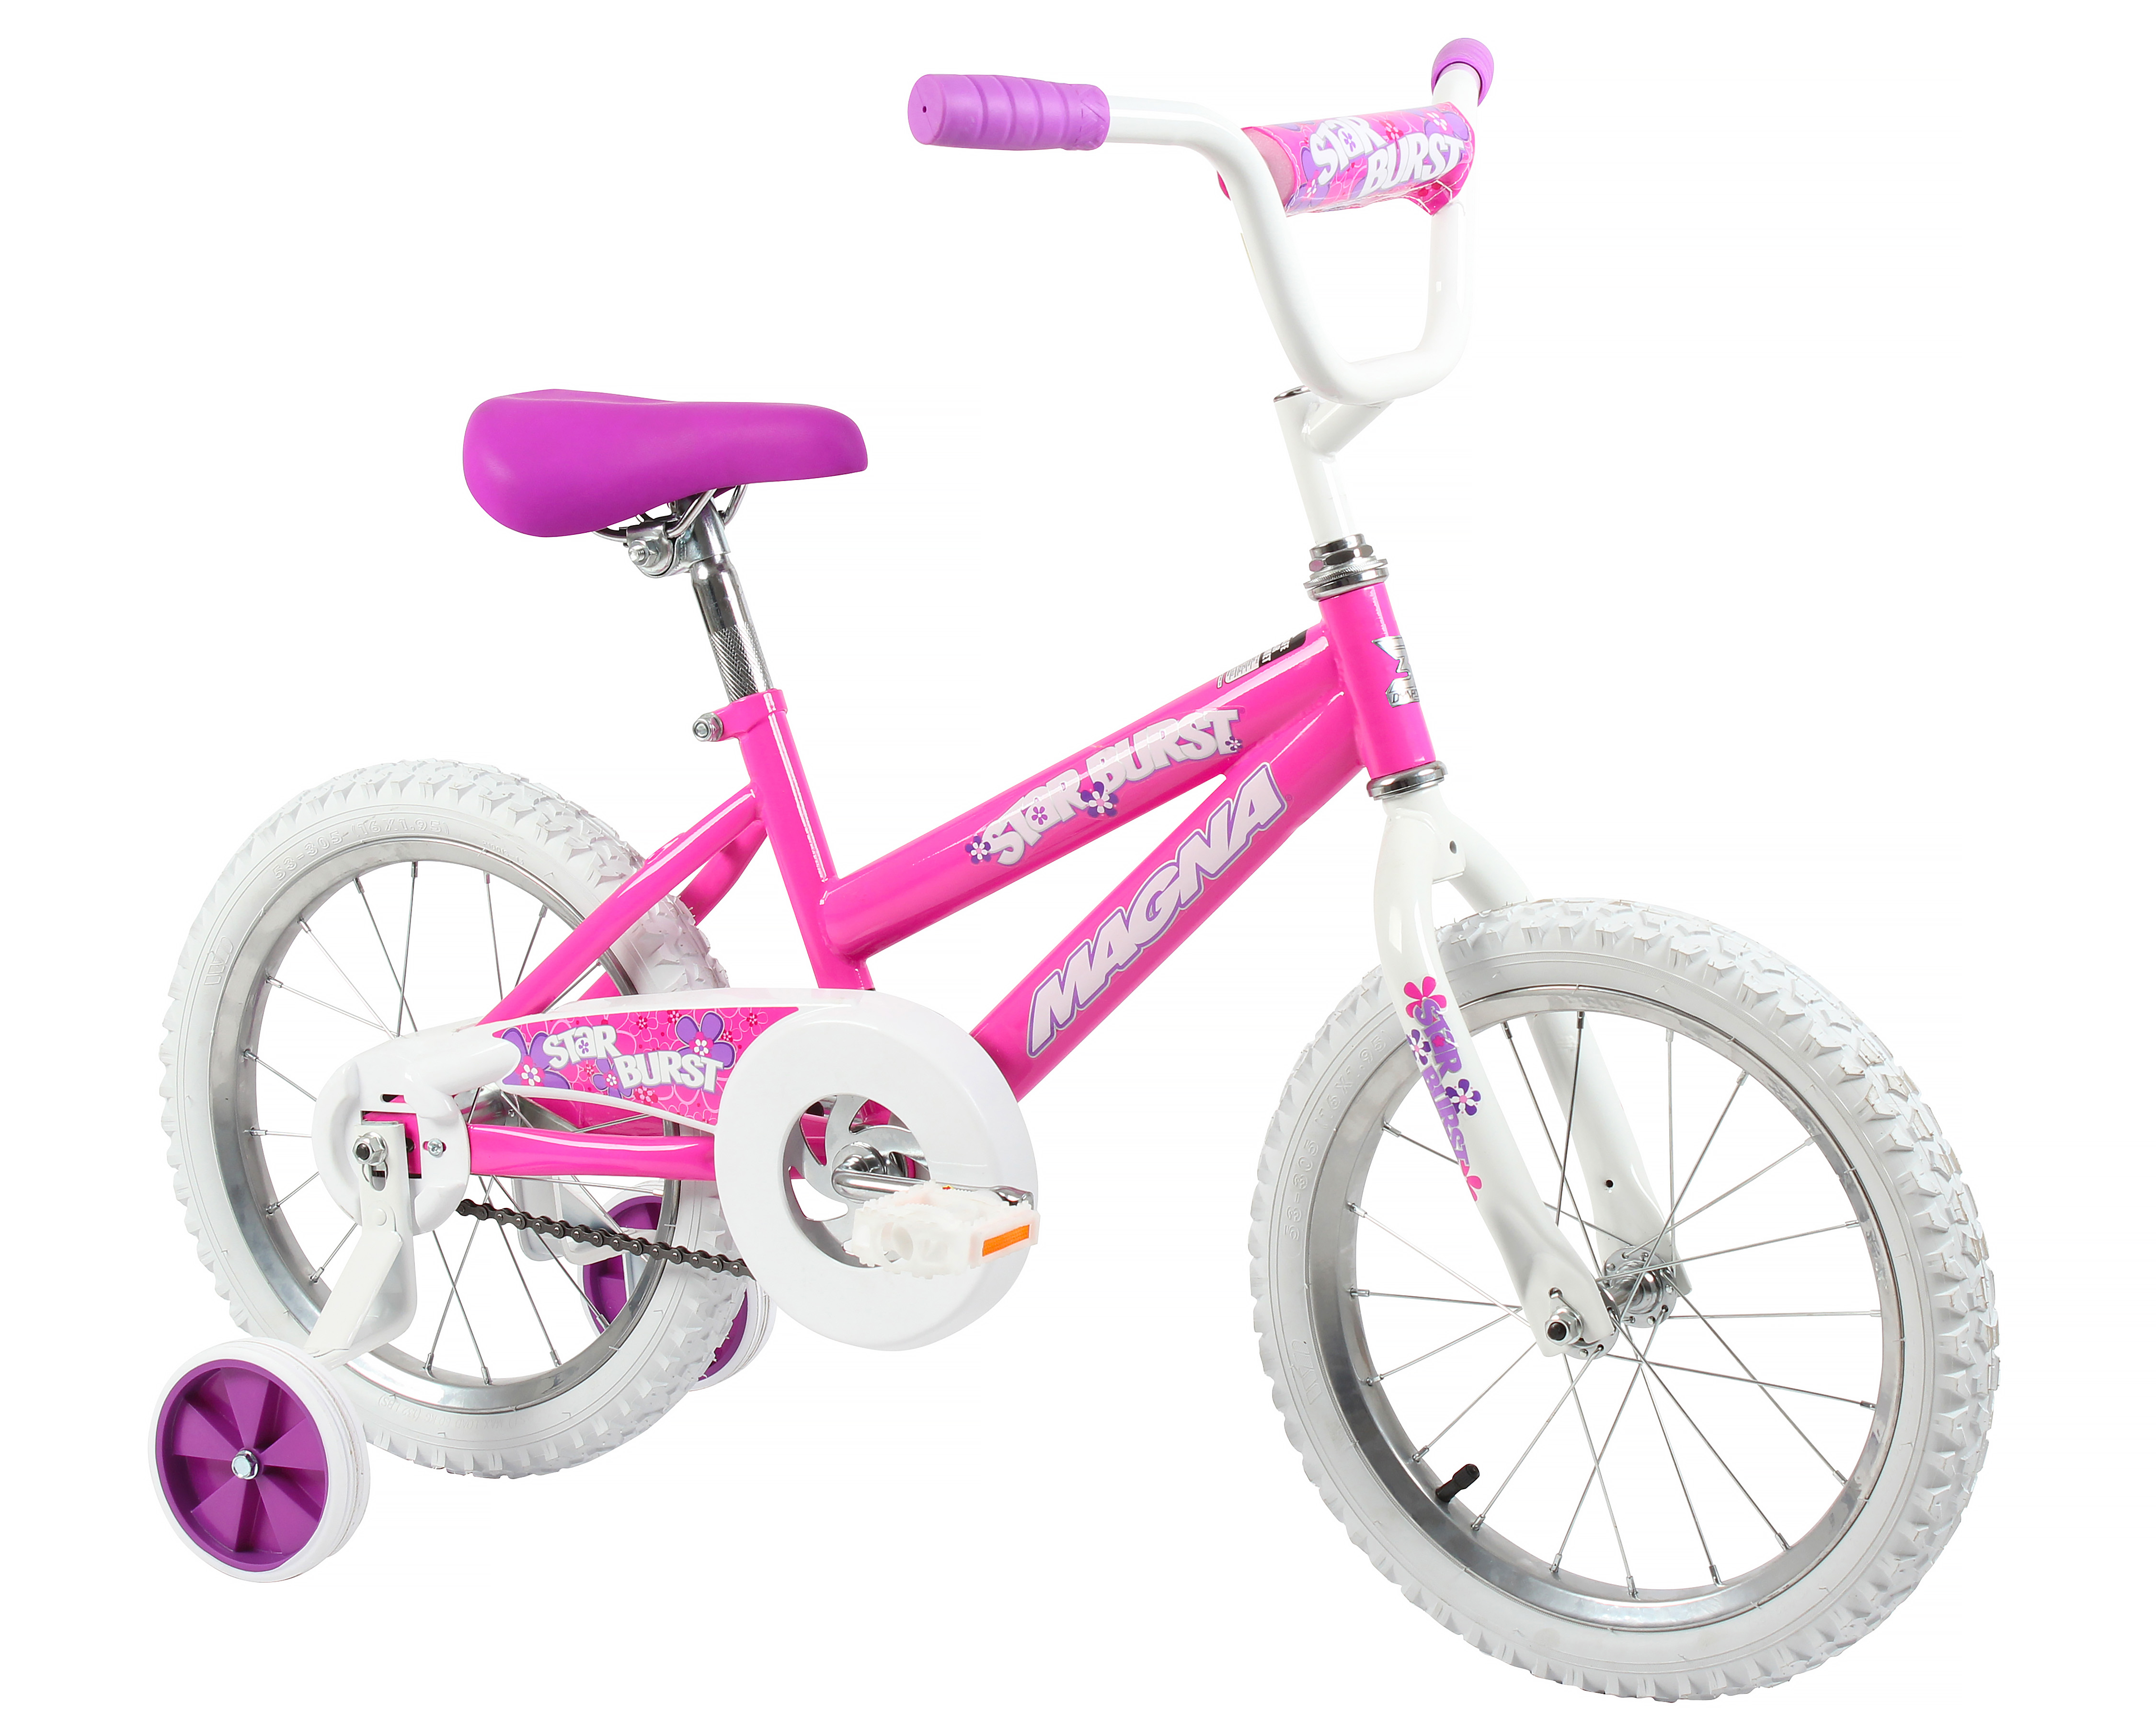 Magna Starburst 16 Bike for Ages 4-8 Pink